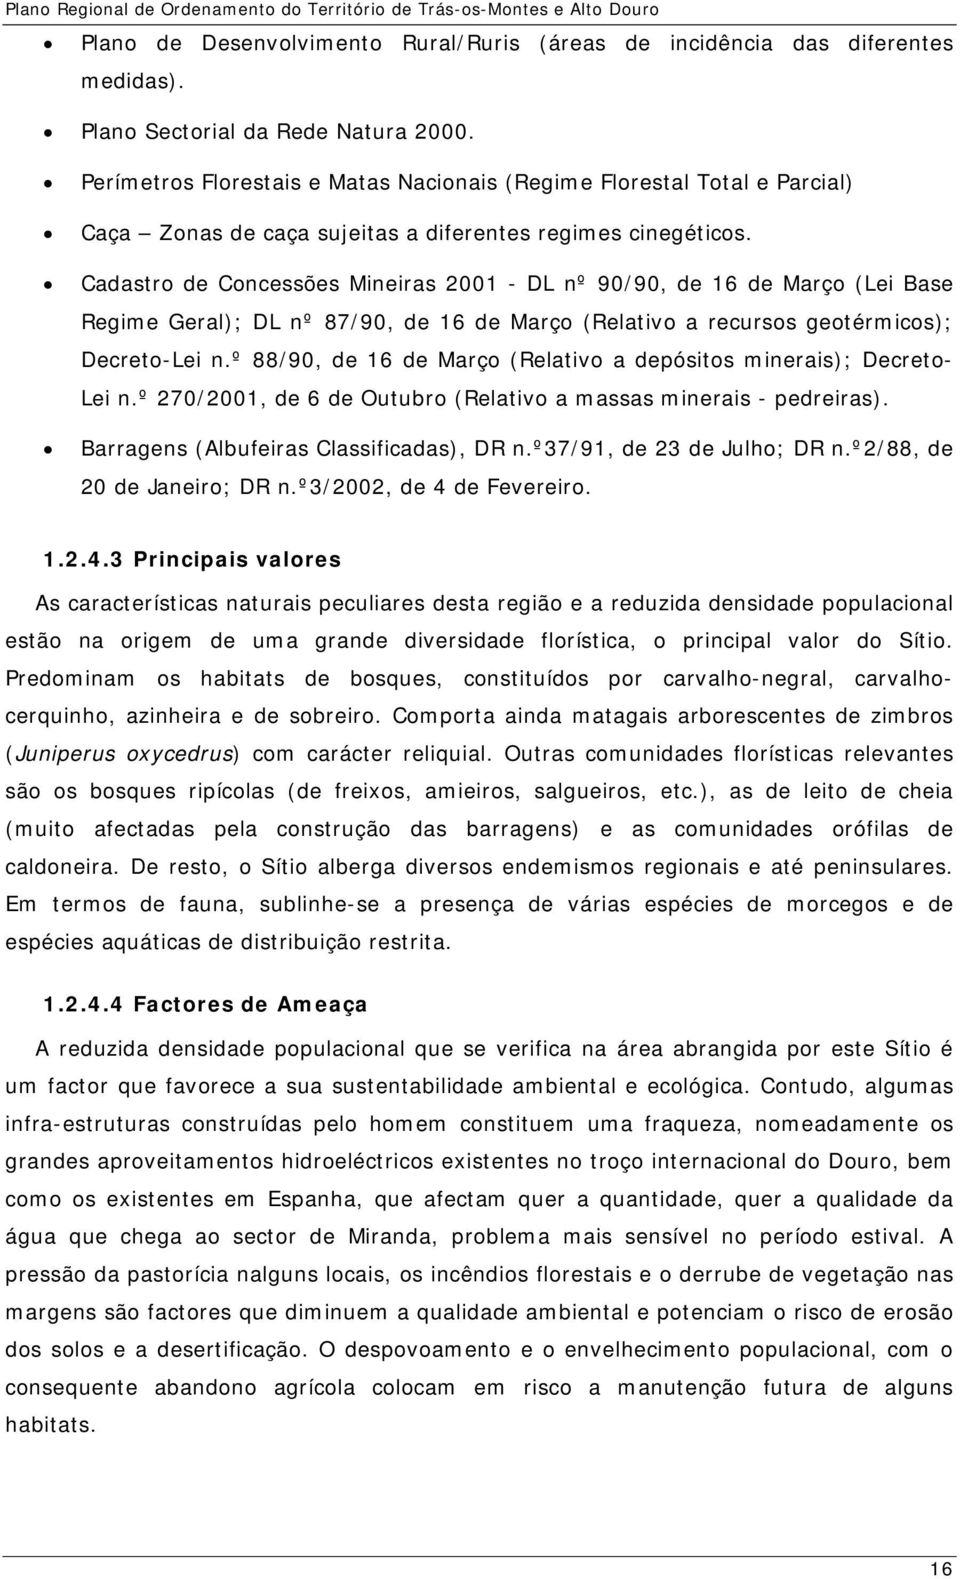 Cadastro de Concessões Mineiras 2001 - DL nº 90/90, de 16 de Março (Lei Base Regime Geral); DL nº 87/90, de 16 de Março (Relativo a recursos geotérmicos); Decreto-Lei n.